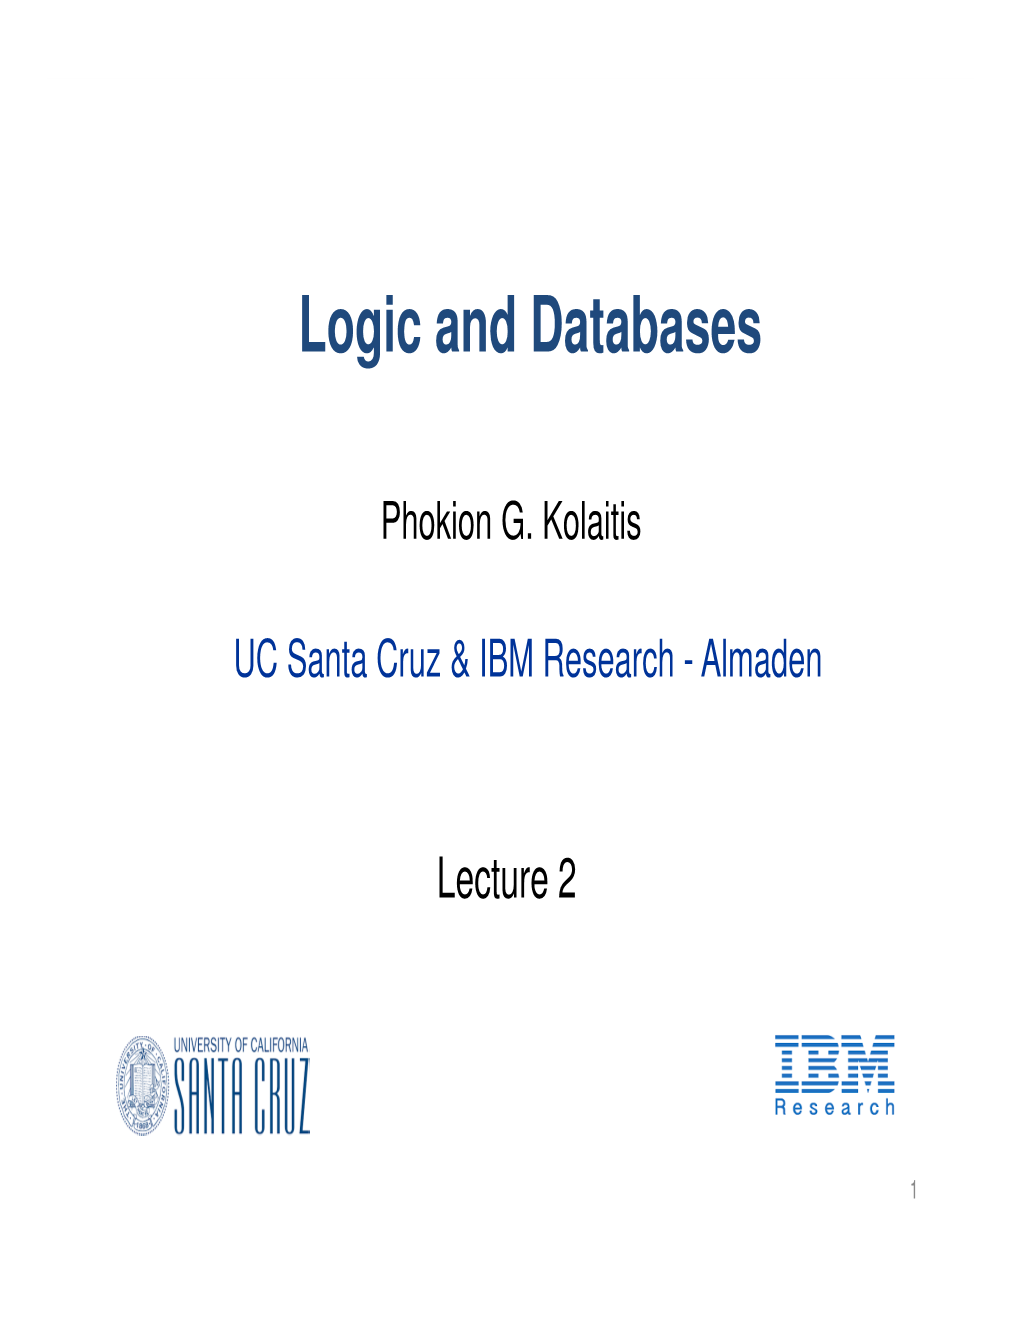 Logic and Databases II